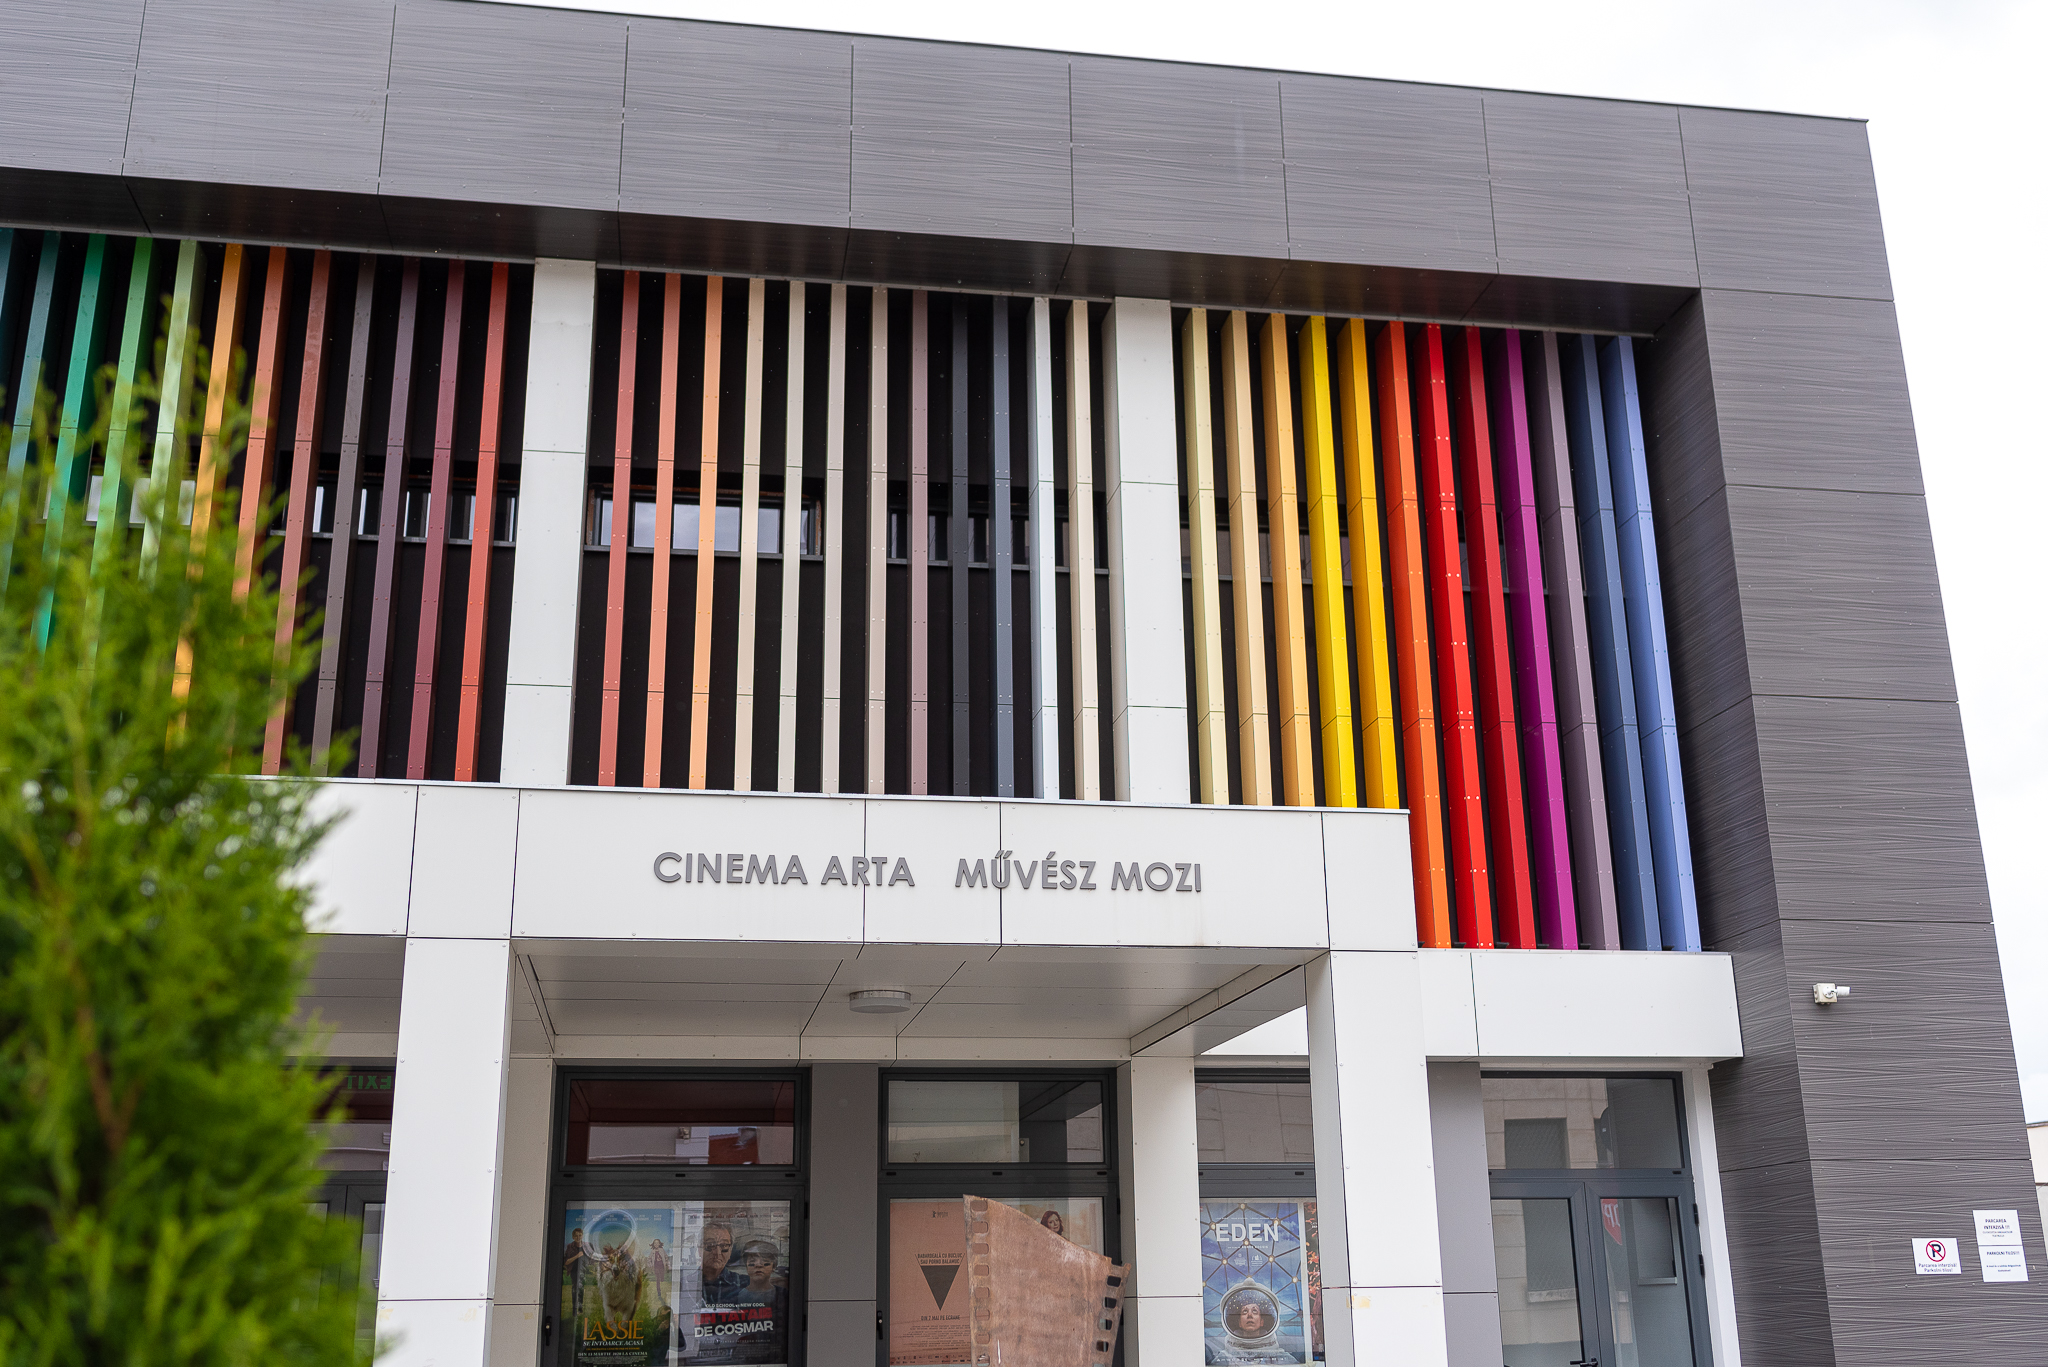 Proiecții festive la cea de-a șasea aniversare a Cinema Arta